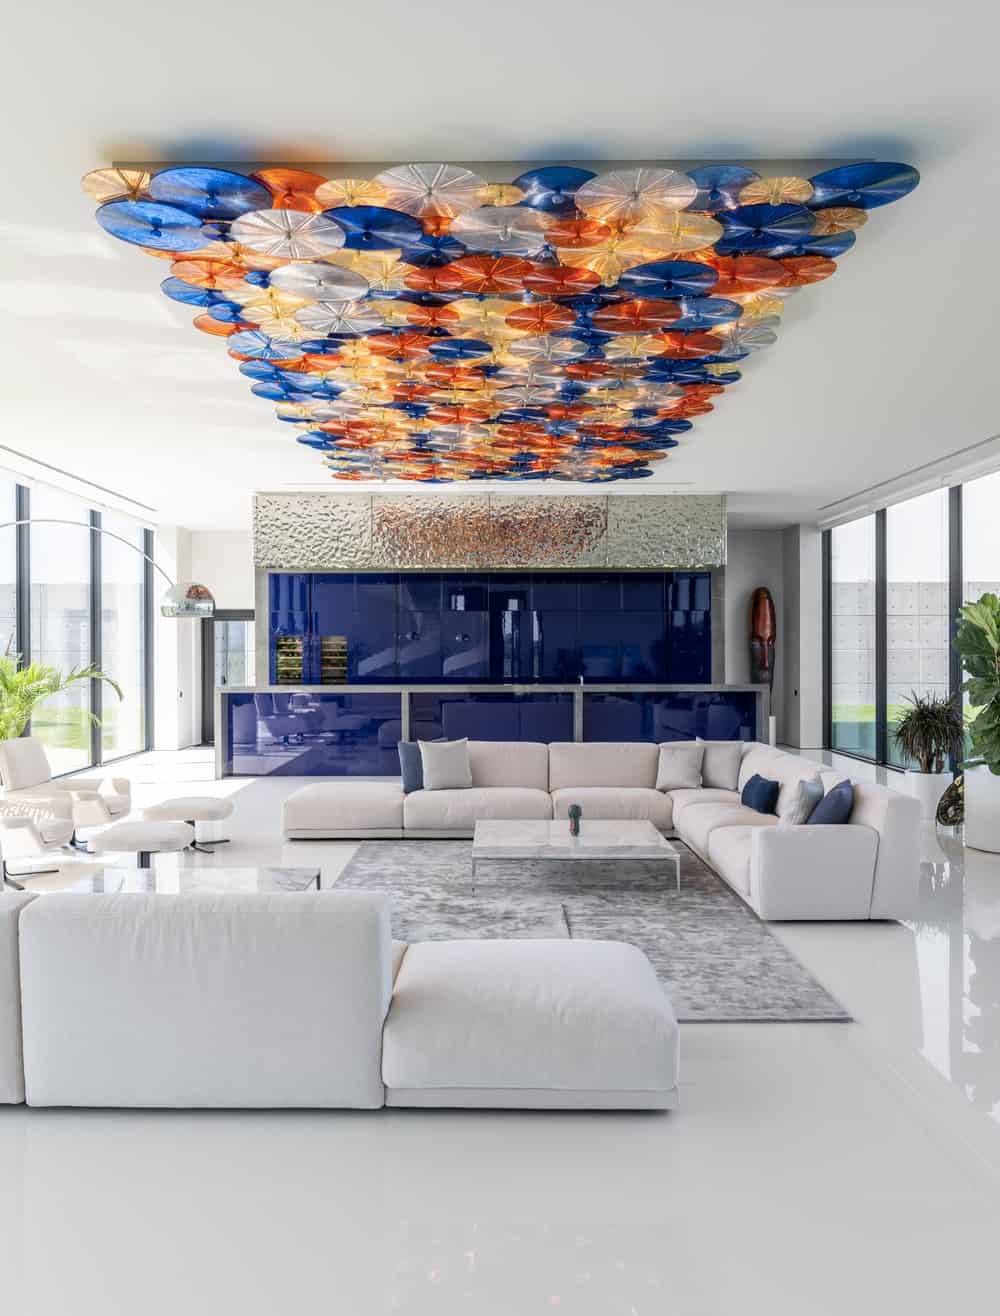 这是房子的客厅，有彩色的天花板，与浅米色的沙发形成对比。